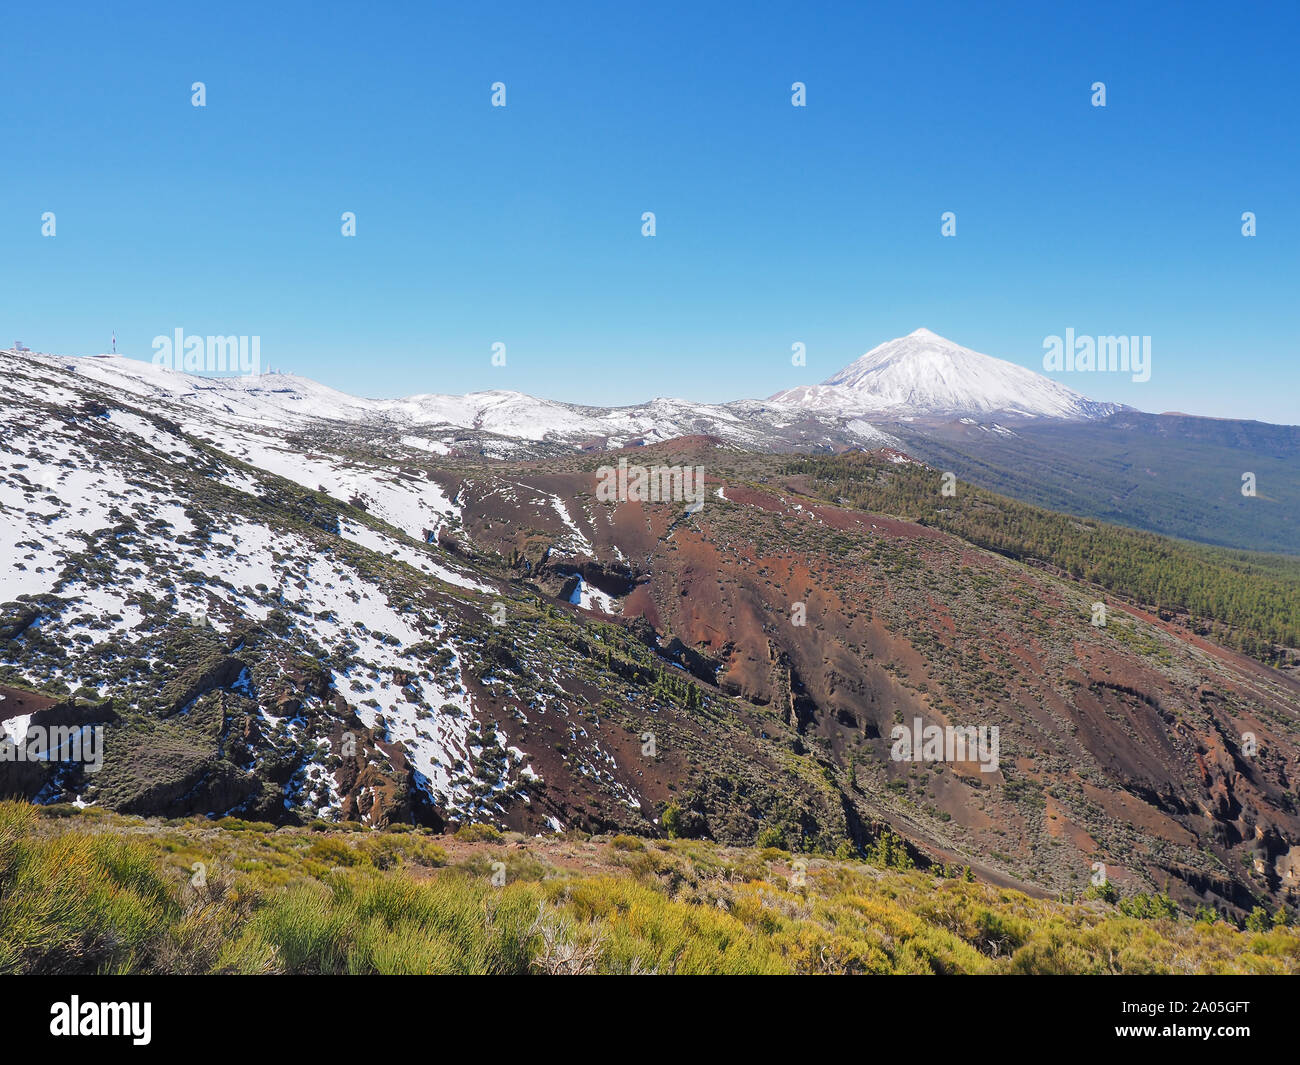 Amplio ángulo de visión horizontal de El Teide y gran paisaje volcánico con nieve y plantas frescas en primer plano Foto de stock